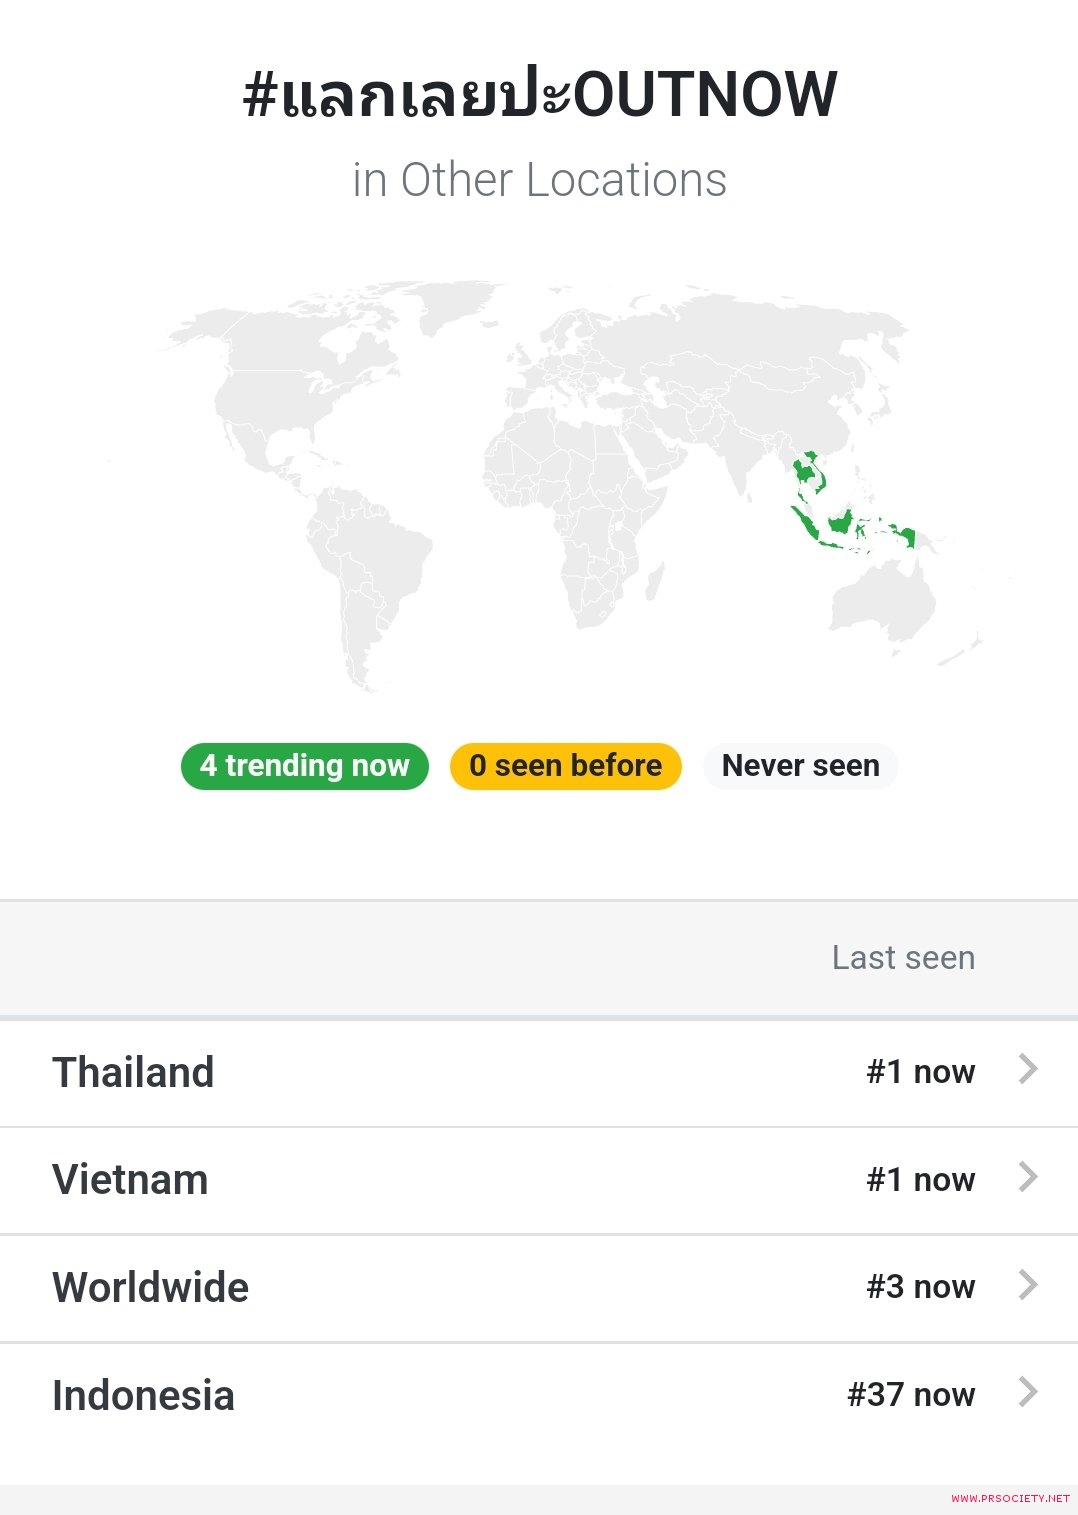 #แลกเลยปะOUTNOW   ติดเทรนด์ทวิตเตอร์อับดับ 3  ของโลก และติดเทรนด์อันดับ 1 ในไทย